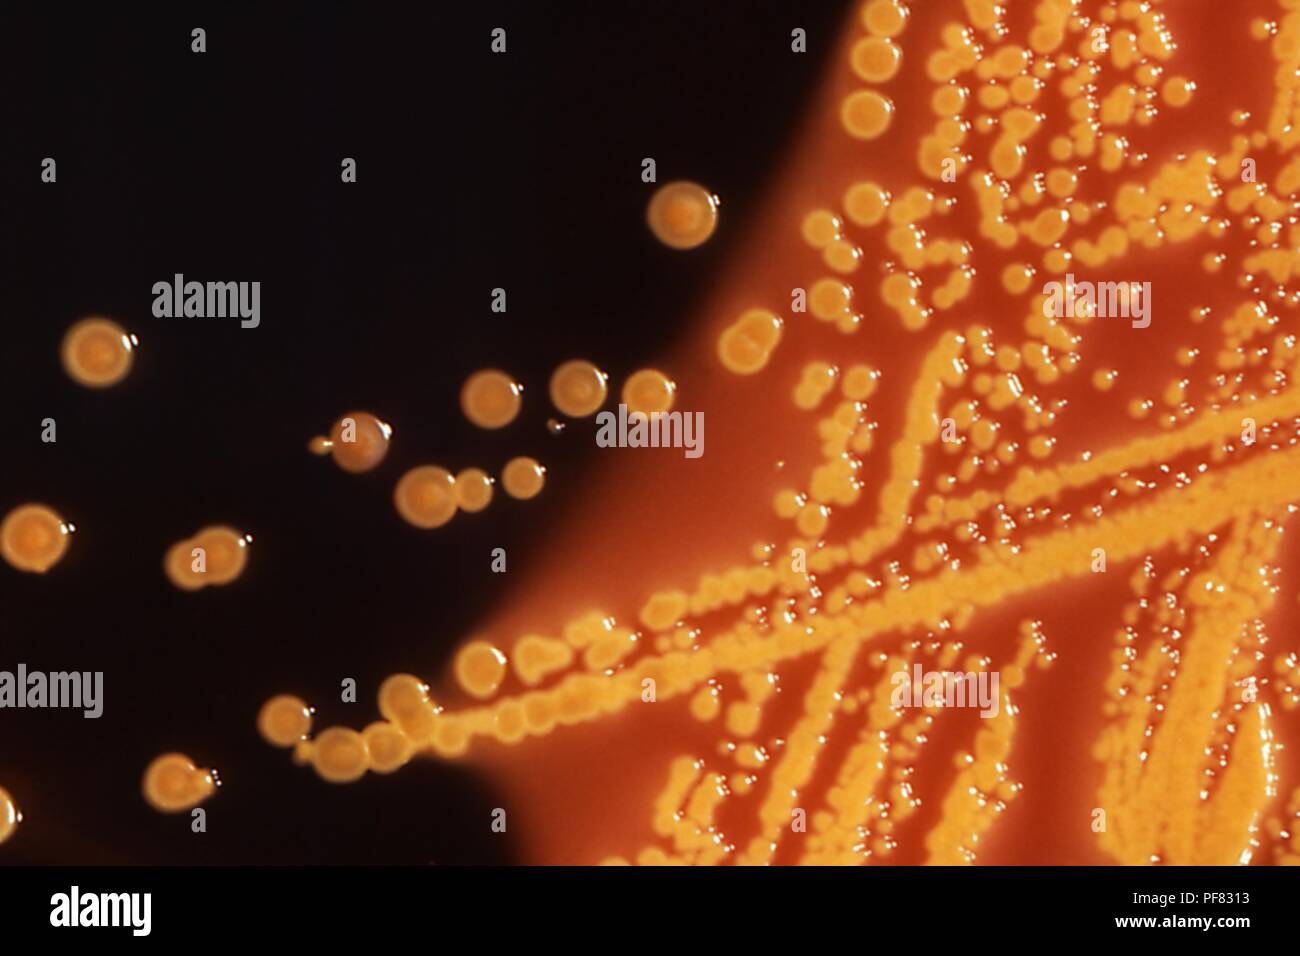 Les colonies de bactéries Escherichia coli cultivées sur un entérique Hektoen (IL) Gélose plate, 1976. Image courtoisie Centres for Disease Control (CDC). () Banque D'Images